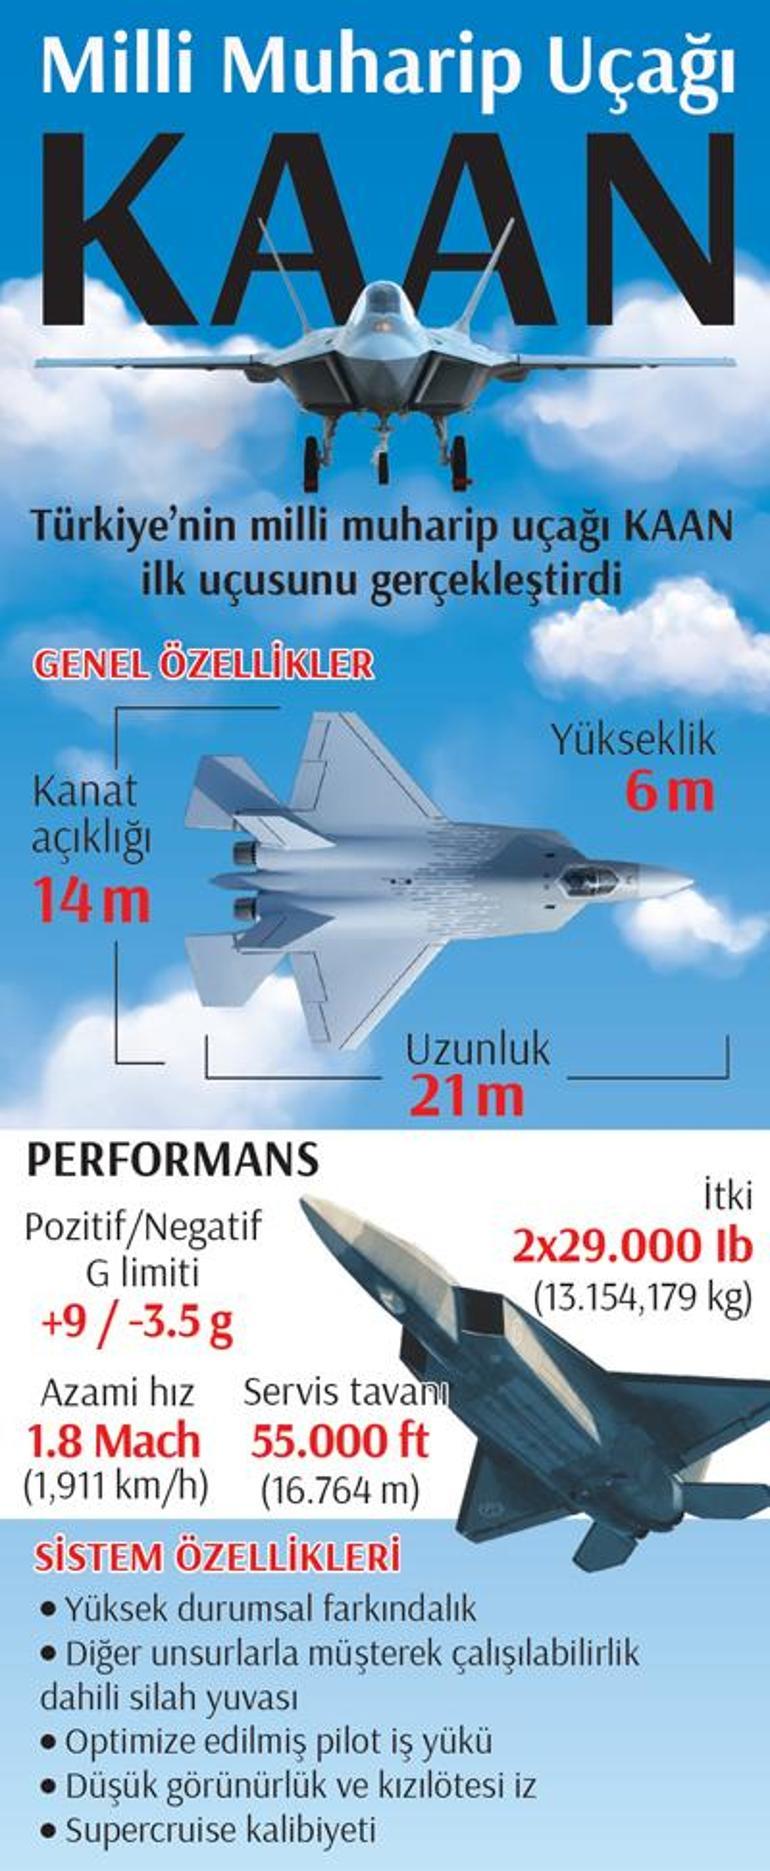 Milli uçak KAAN gök vatanda! İşte F-16 ve KAAN karşılaştırması